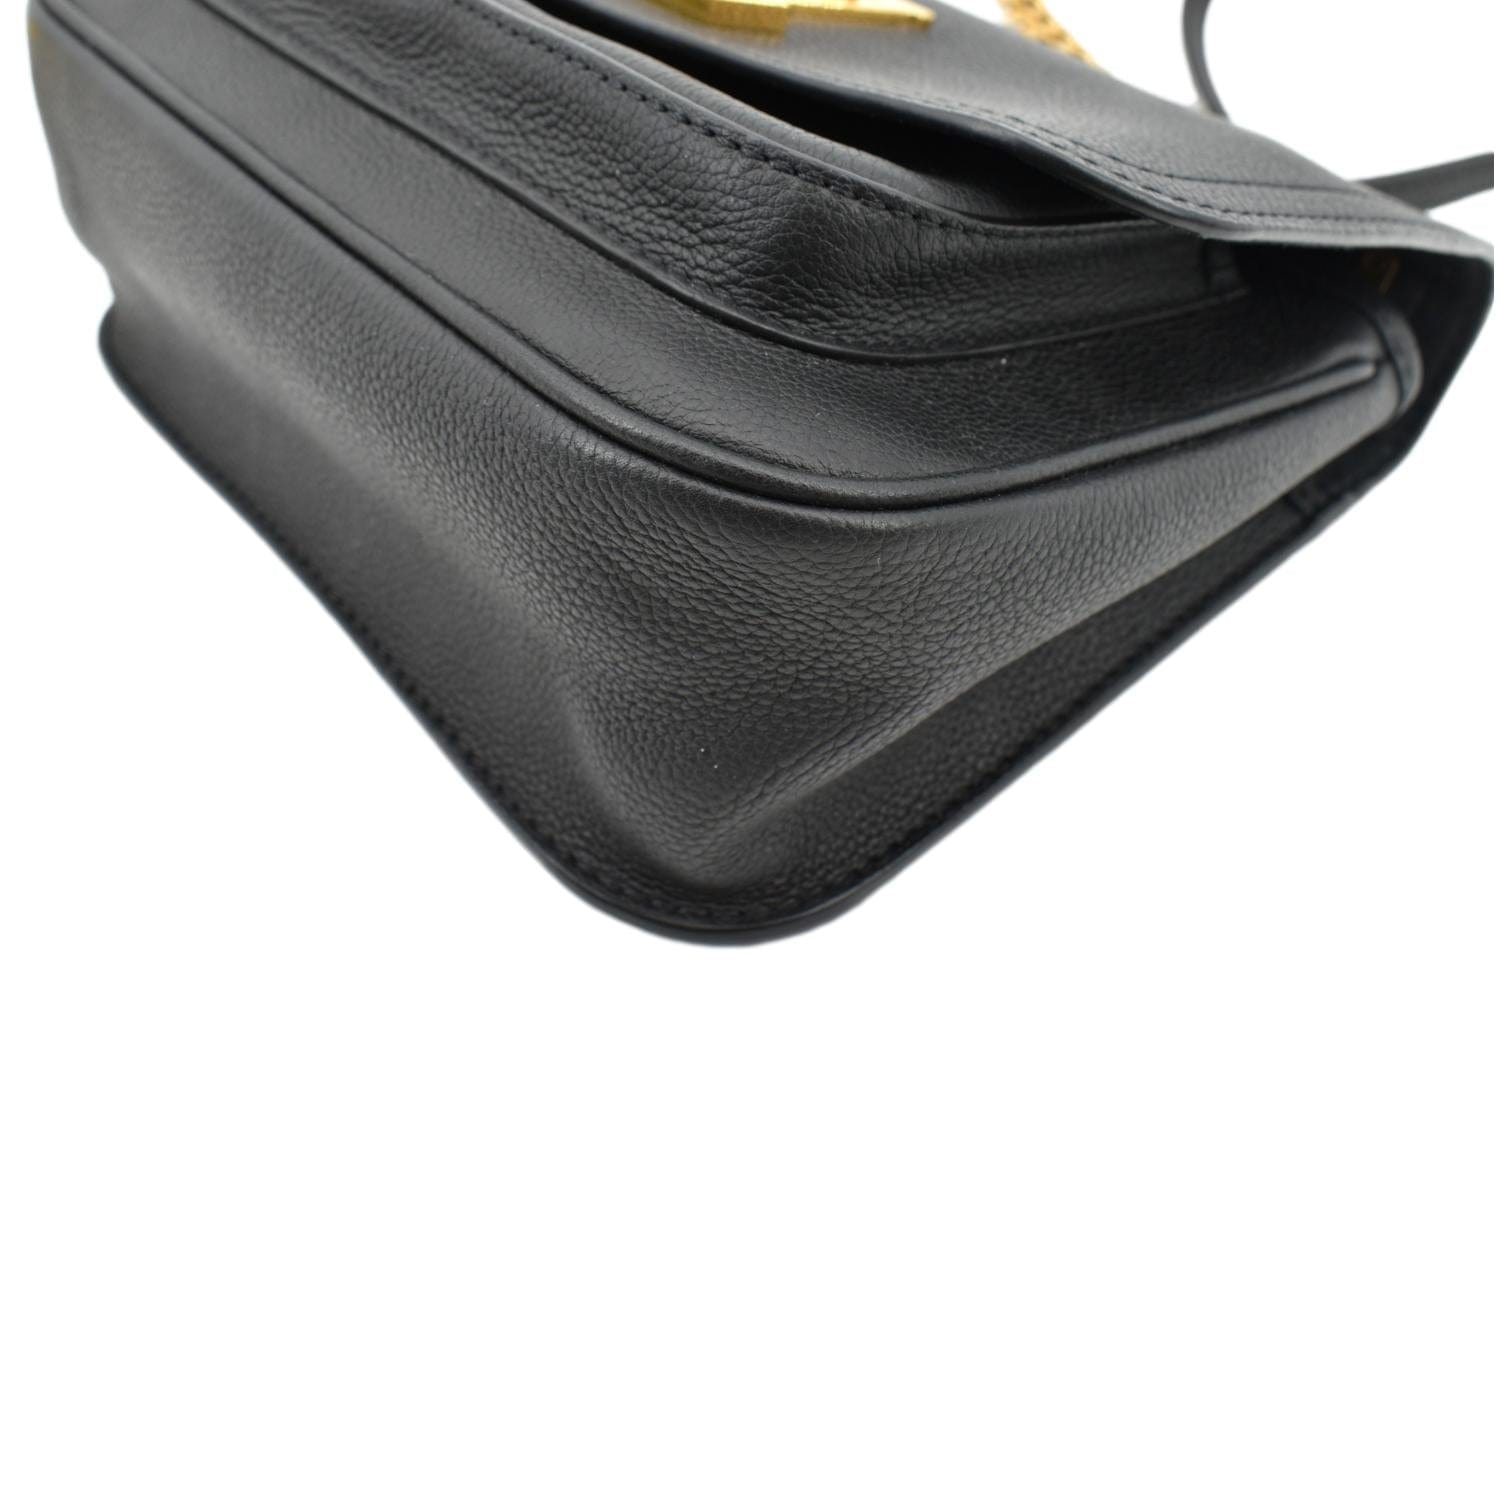 Vuitton - Geronimos - Body - Louis - Bag - N51994 – LOUIS VUITTON Lockme  Chain Grained Leather Shoulder Bag Black - Damier - Louis Vuitton 2004  pre-owned Coussin GM shoulder bag - Bag - Waist